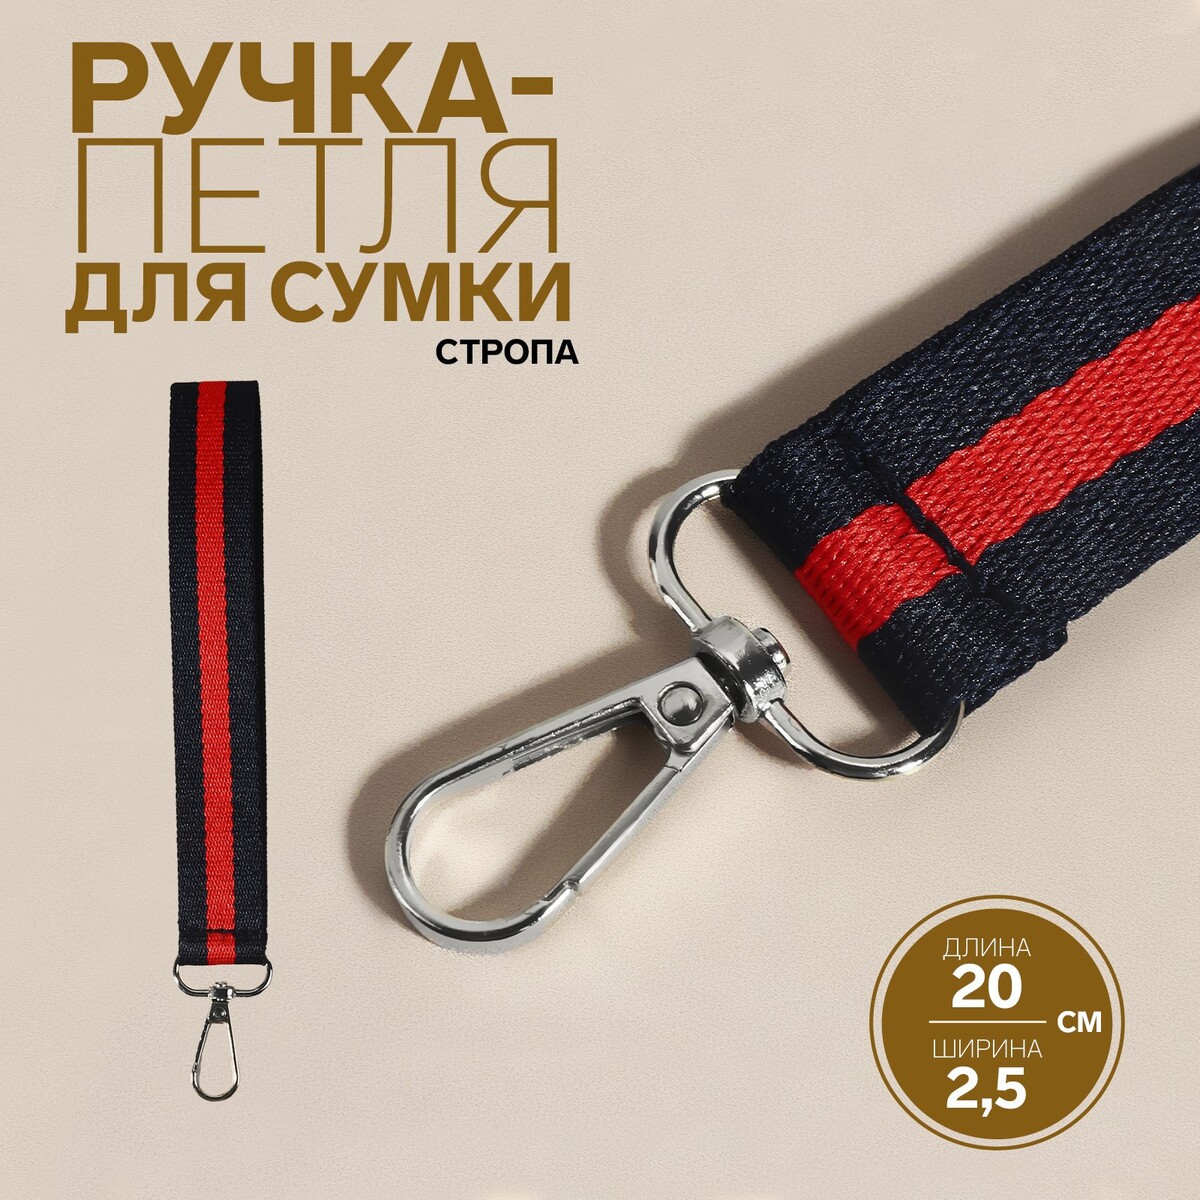 Ручка-петля для сумки, стропа, 20 × 2,5 см, цвет синий/красный ручка панорама грозный цв красный